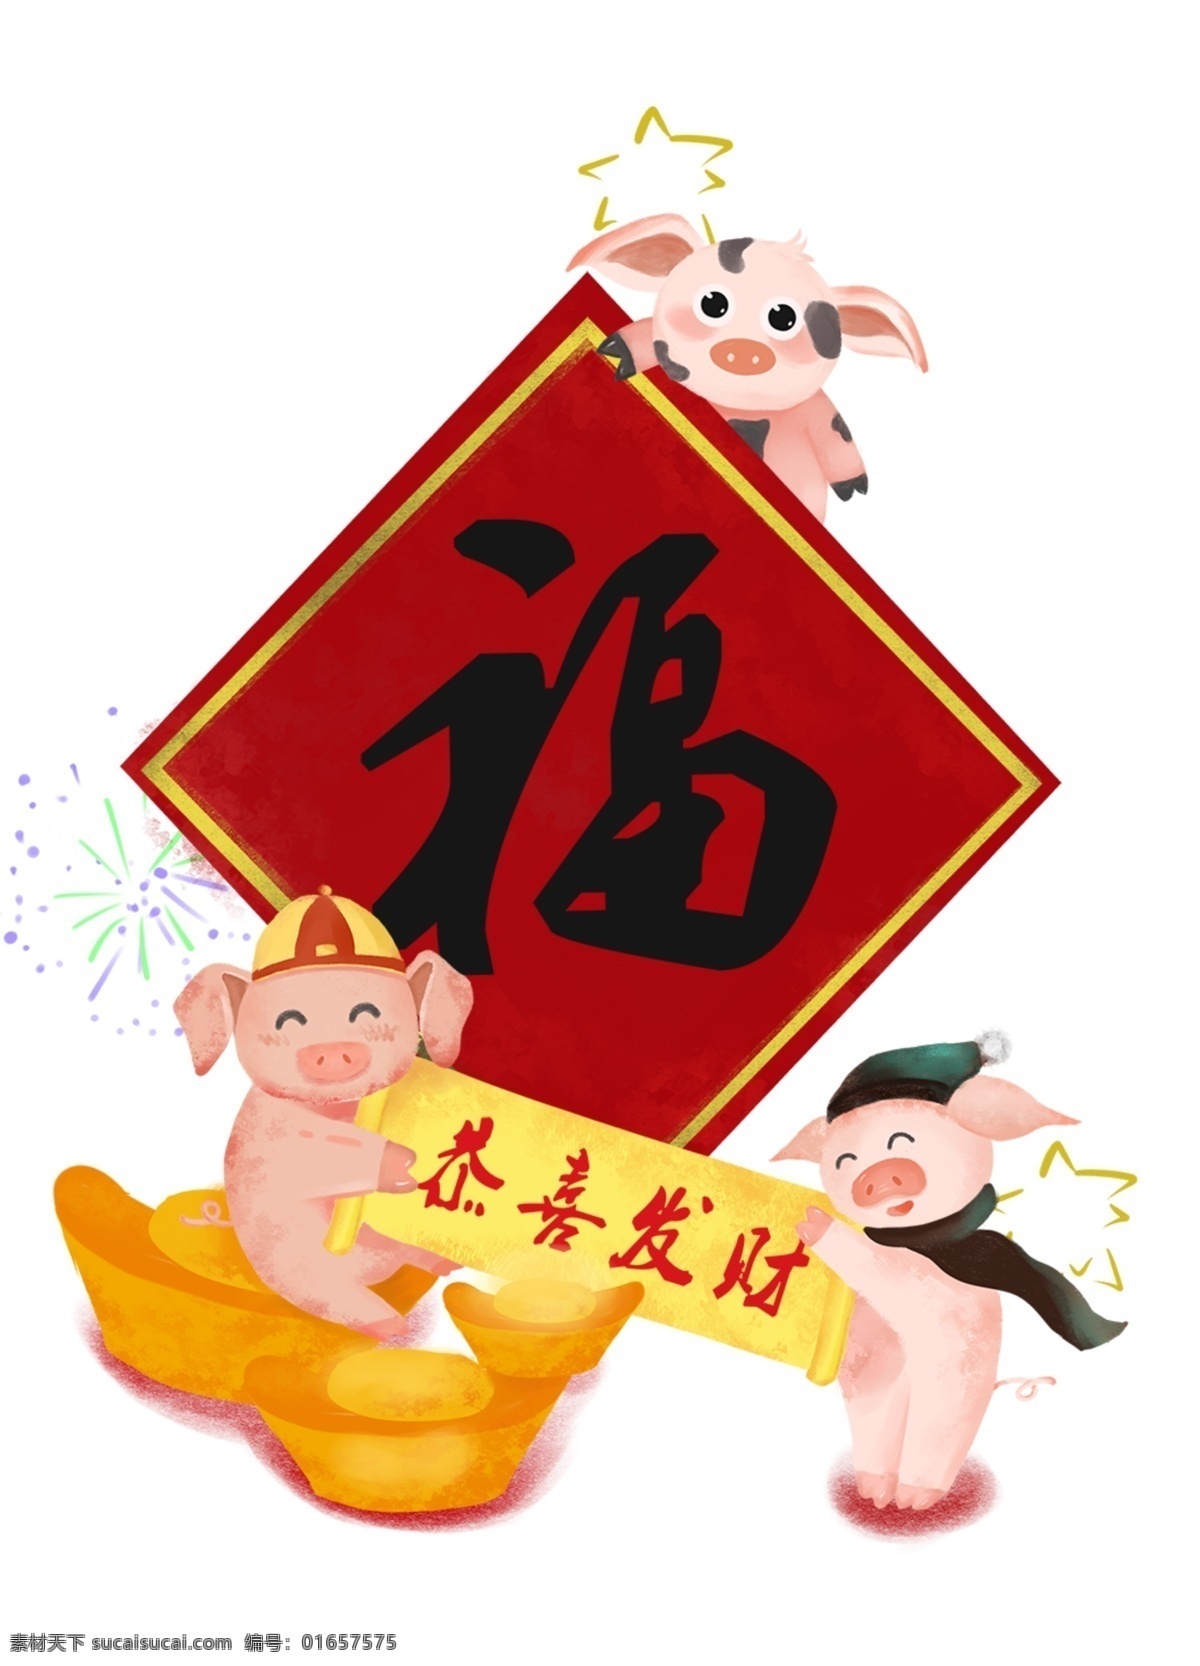 猪年 新年 喜庆 可爱 卡通 插画 手绘 精美 海报插画 广告插画 小清新 简约风 装饰图案